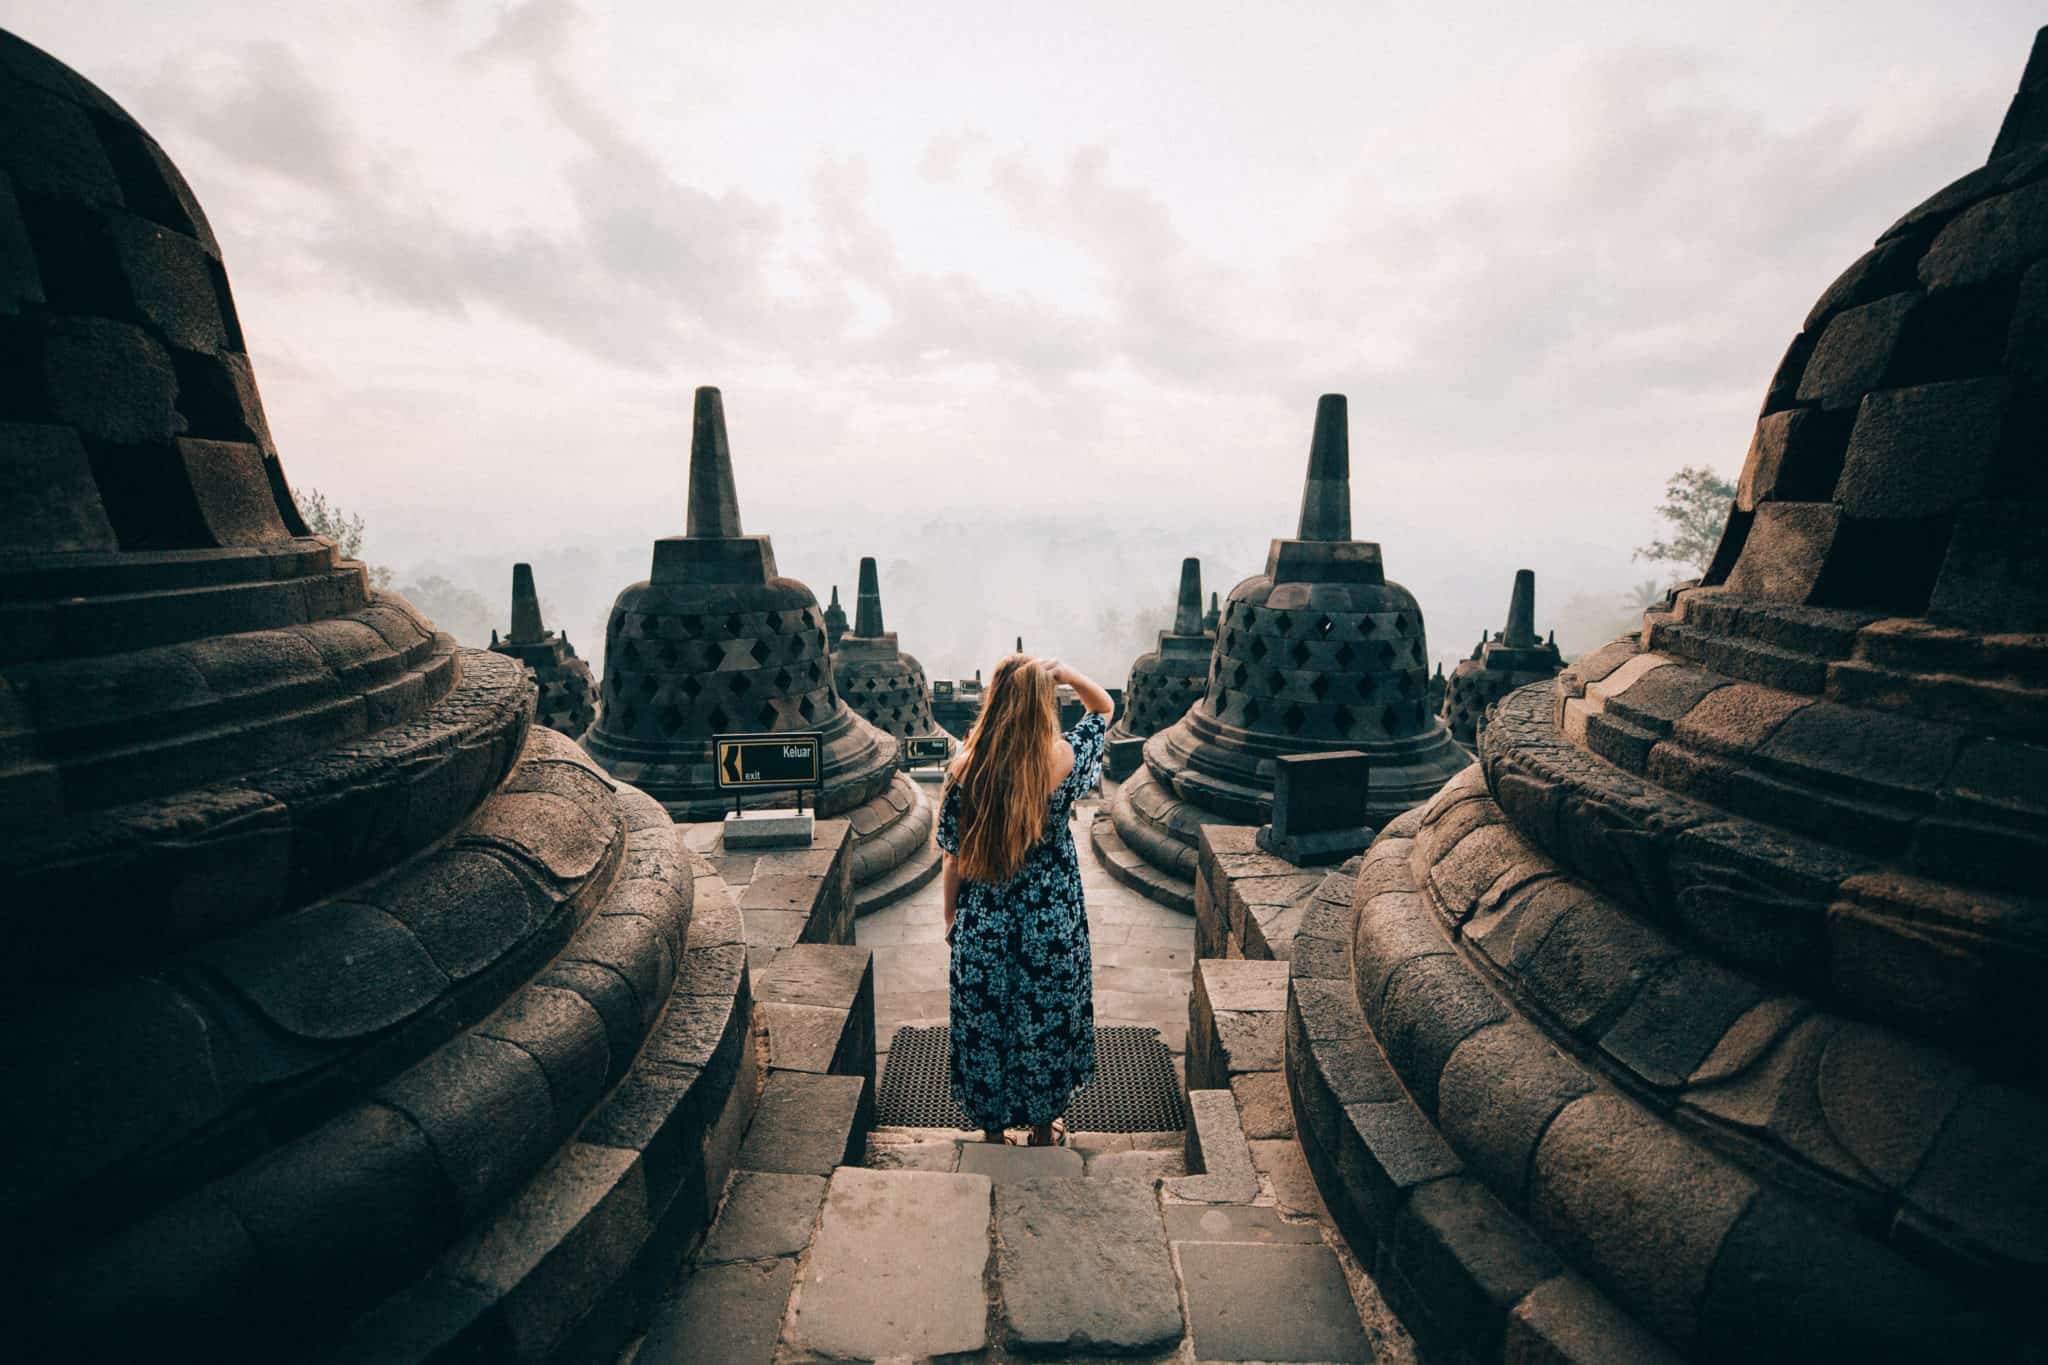 Borobudur and Prambanan In 1 Day: Visiting The Best Temples In Yogyakarta